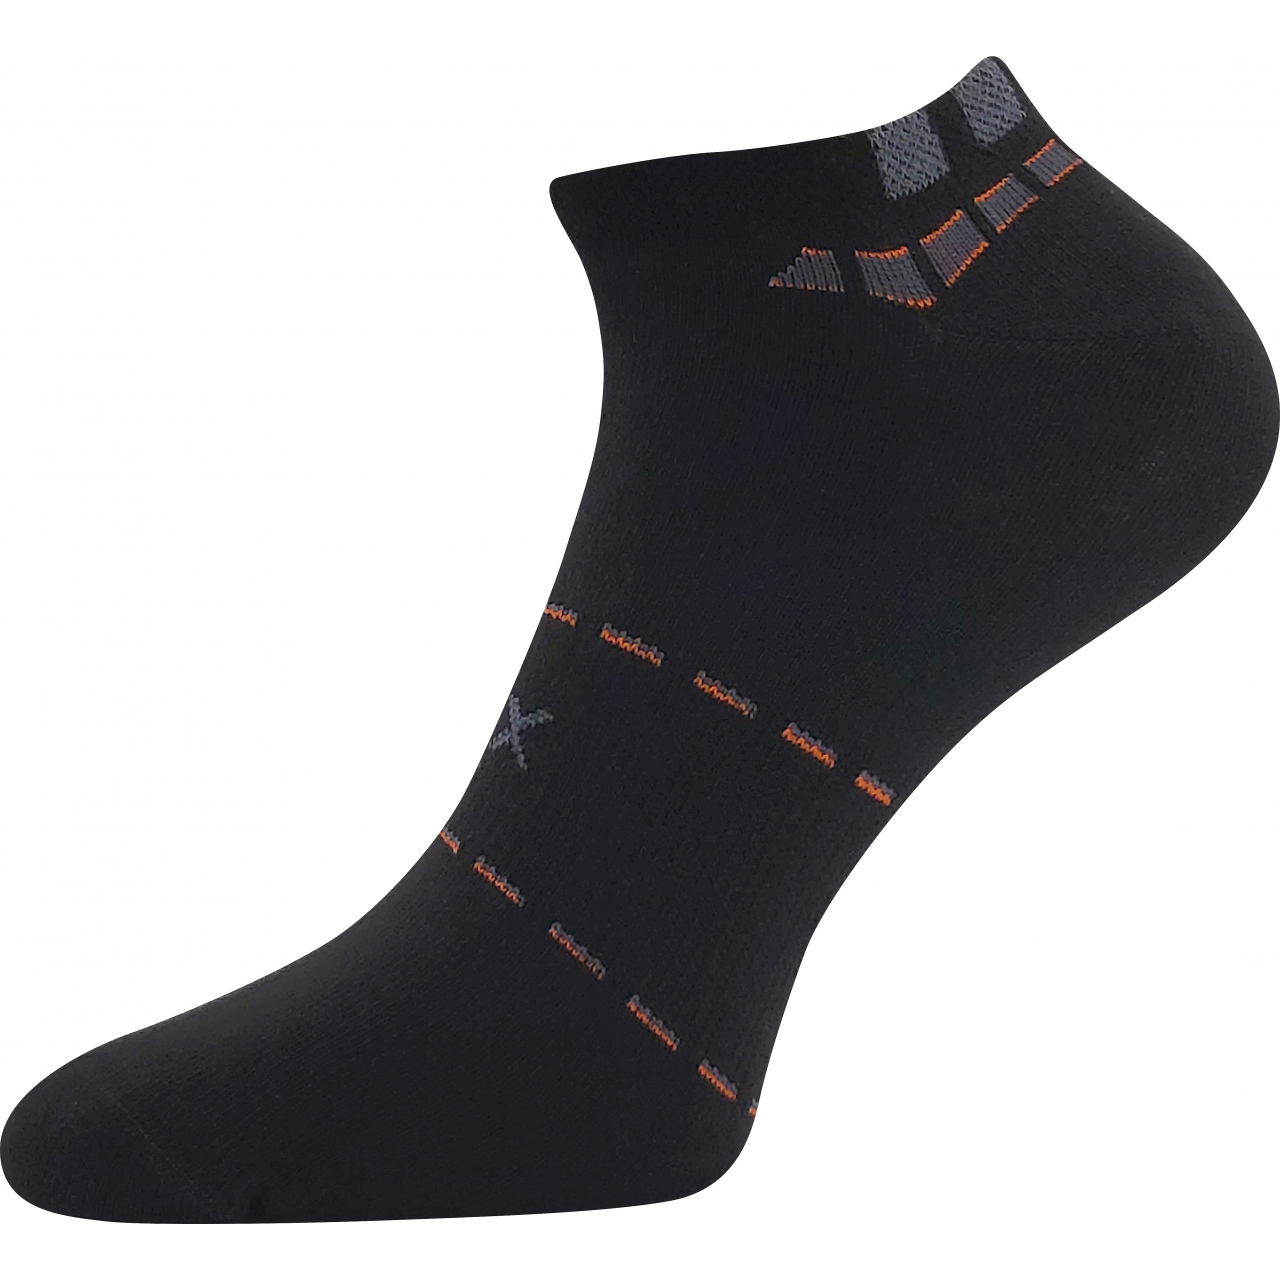 Ponožky pánské sportovní Voxx Rex 16 - černé, 39-42